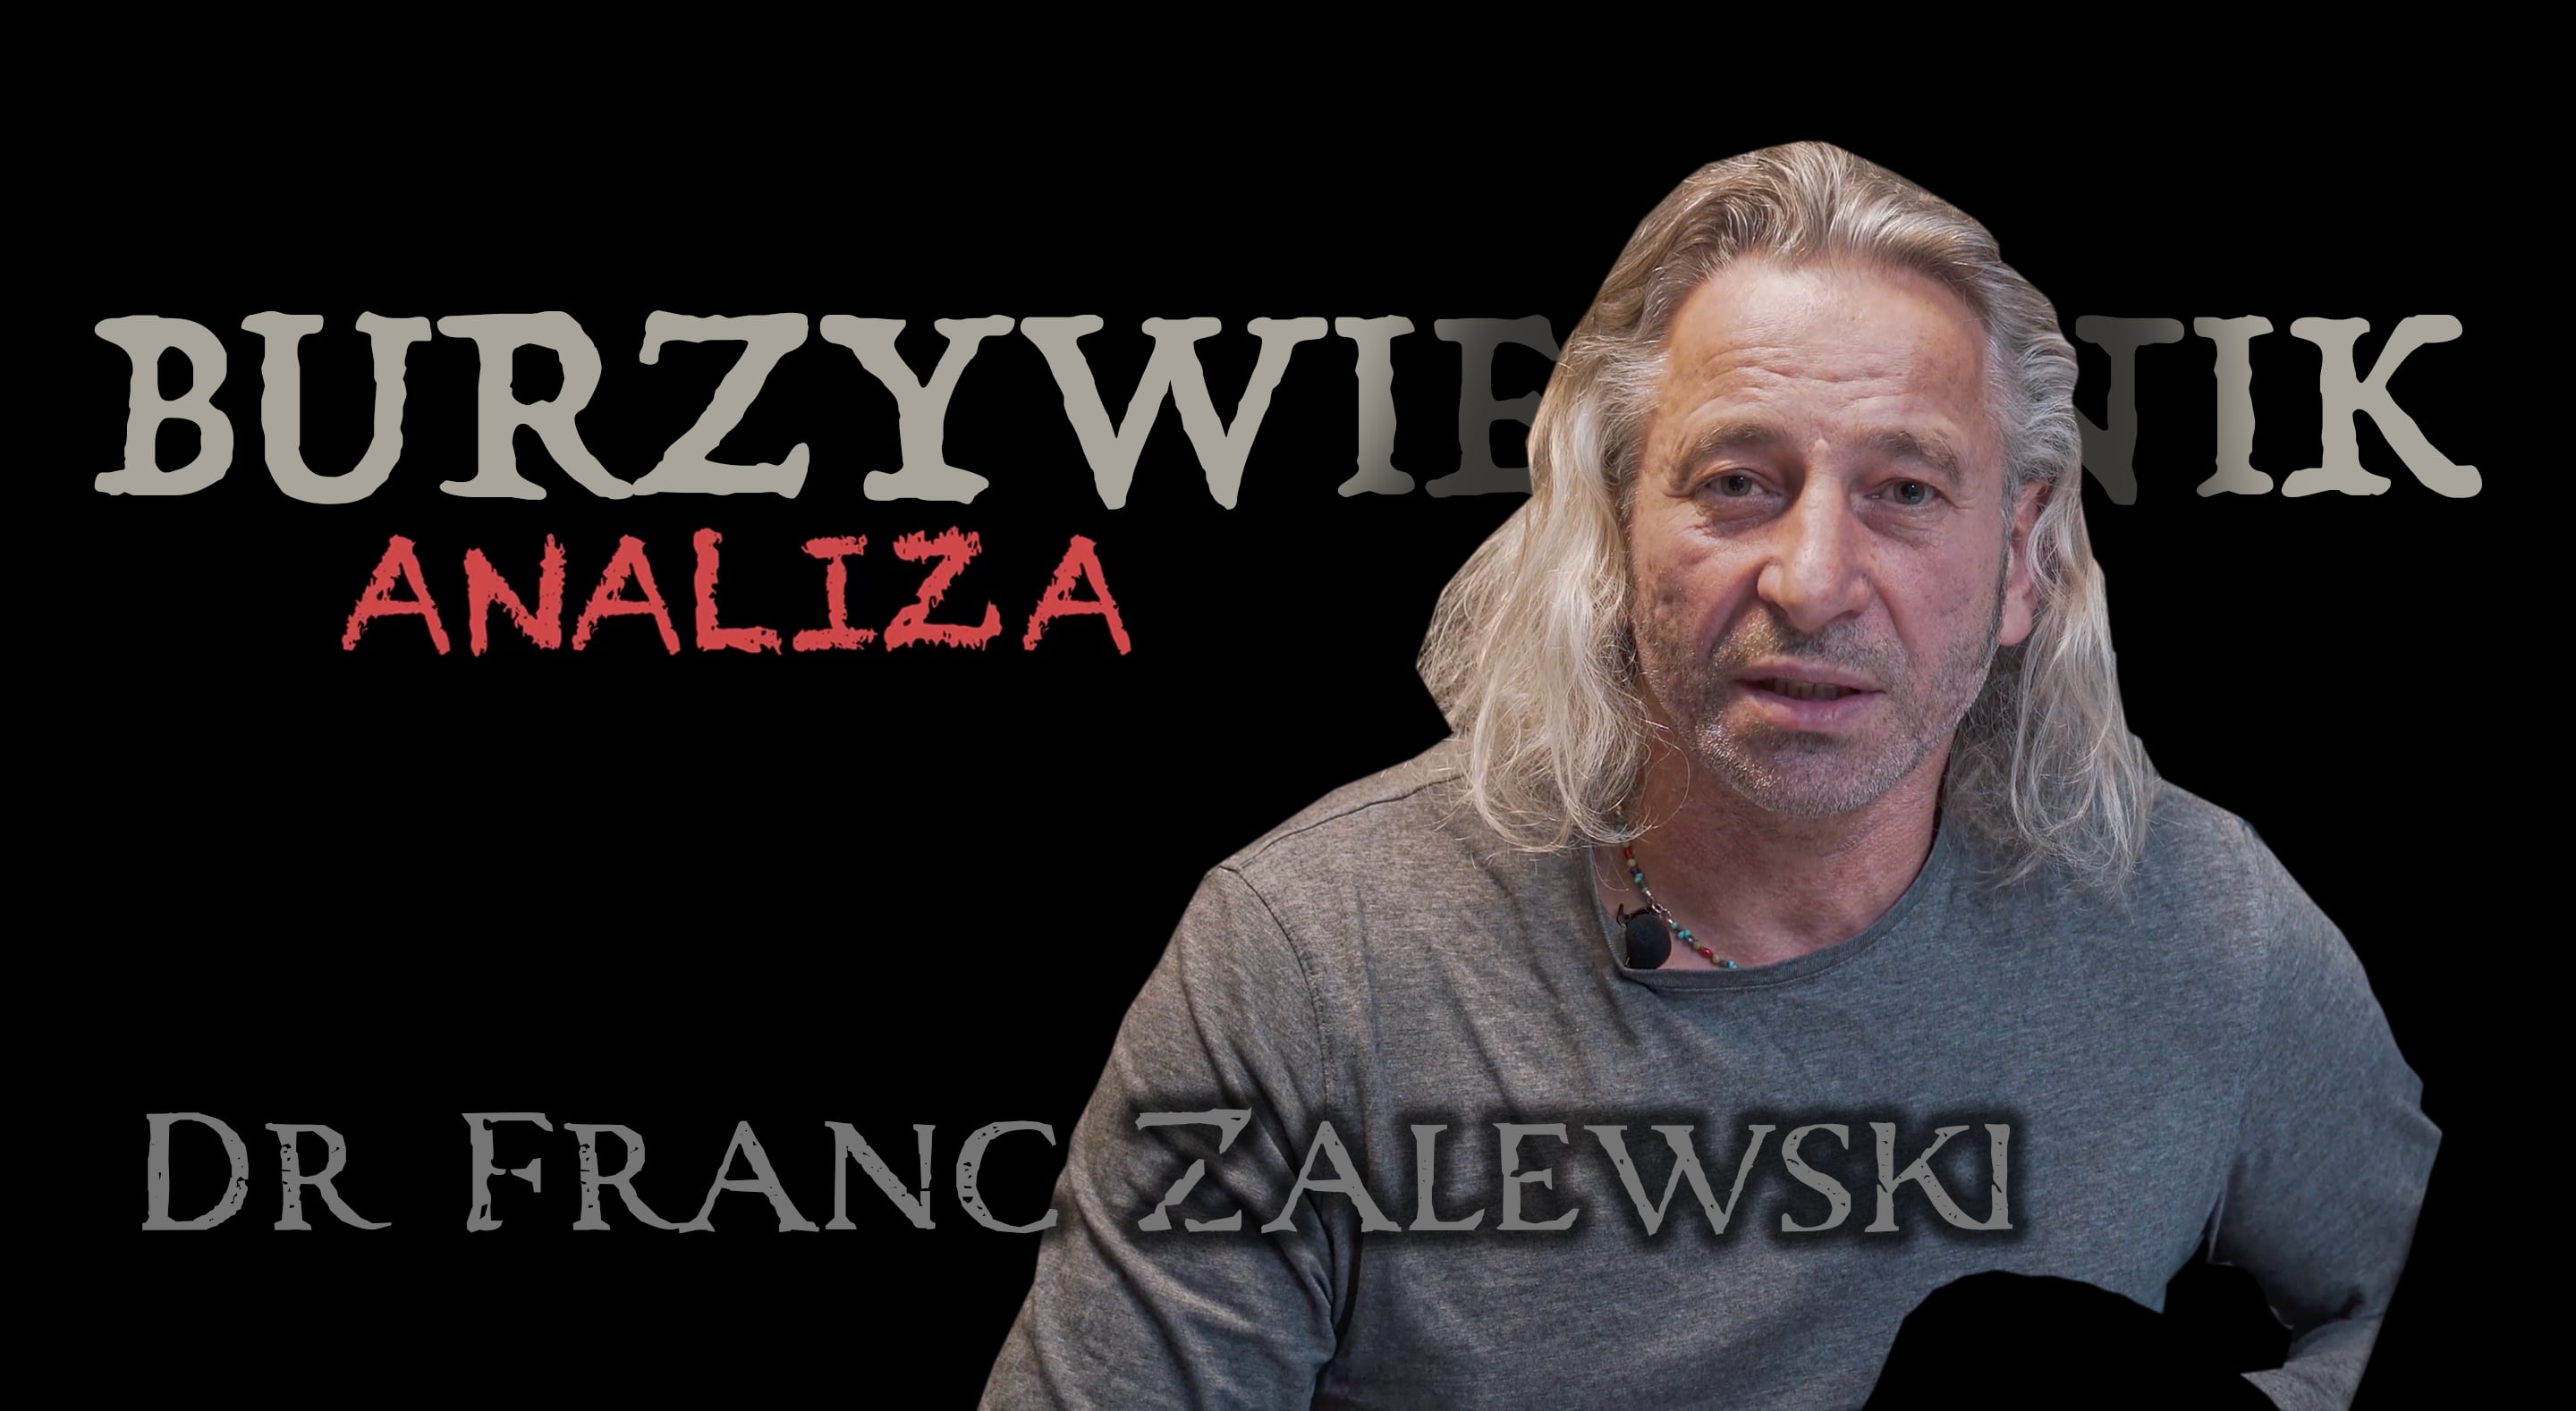 Watch Burzywiestnik Analiza | Dr Franc Zalewski Online | Vimeo On Demand on Vimeo